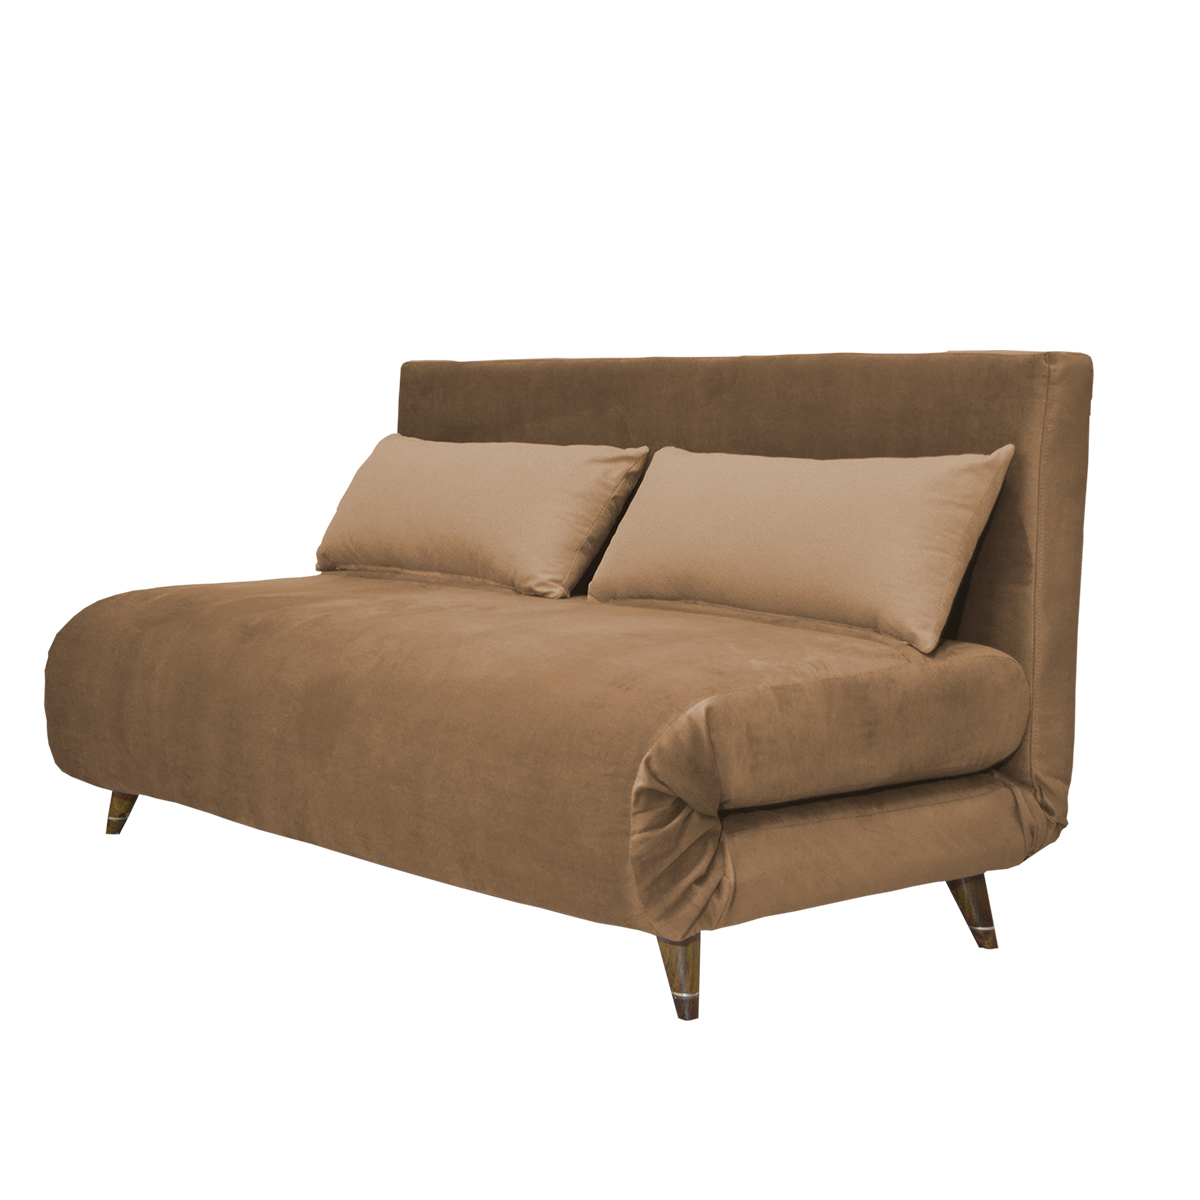 کاناپه مبل تختخواب شو ( تختشو ، تخت خواب شو ) دو نفره آرا سوفا مدل NG20